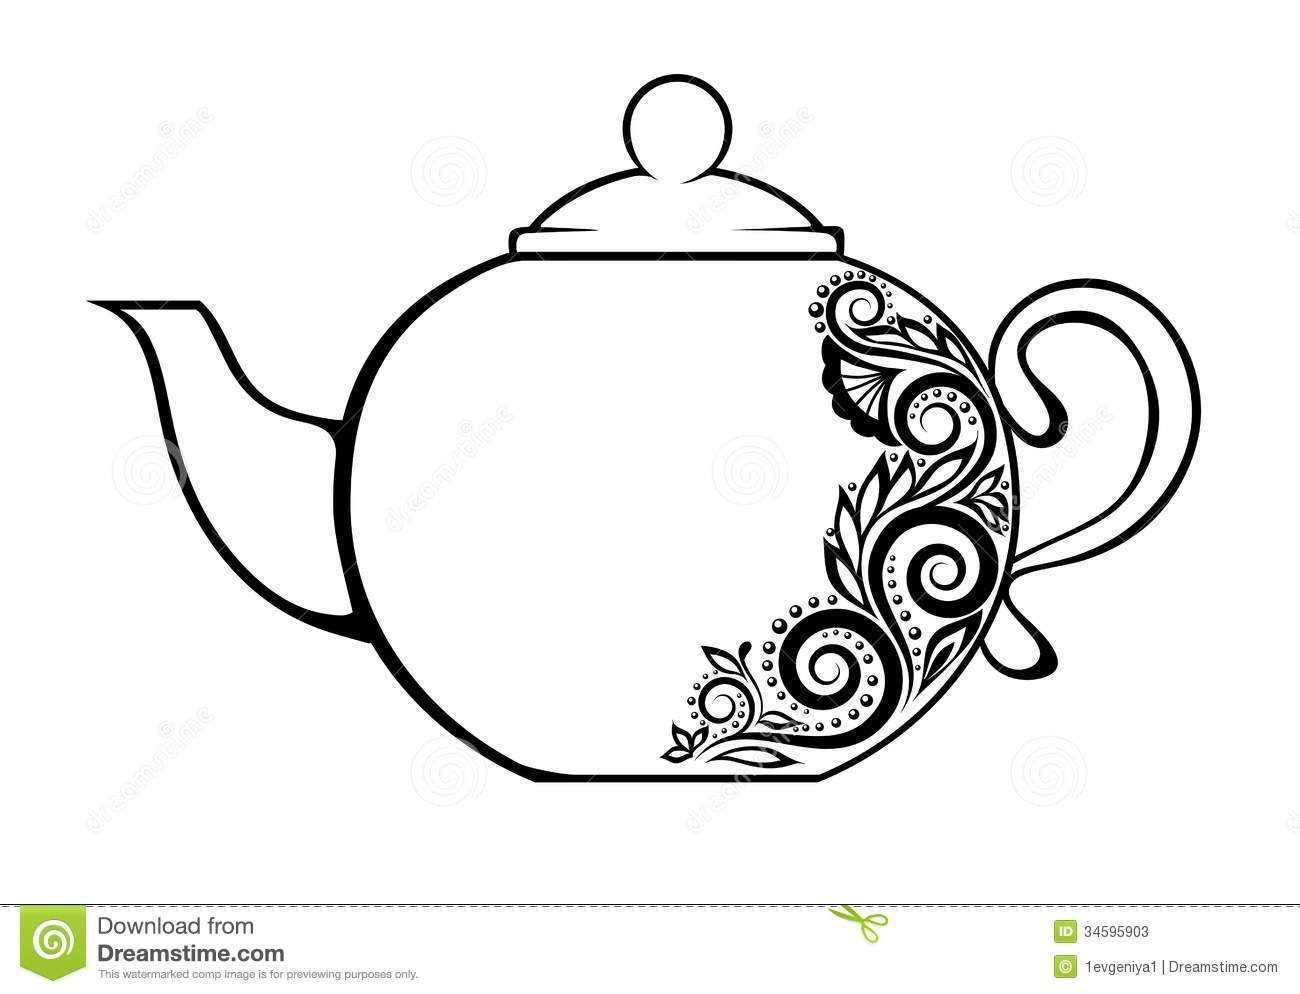 Teapot 1 clip art at vector c